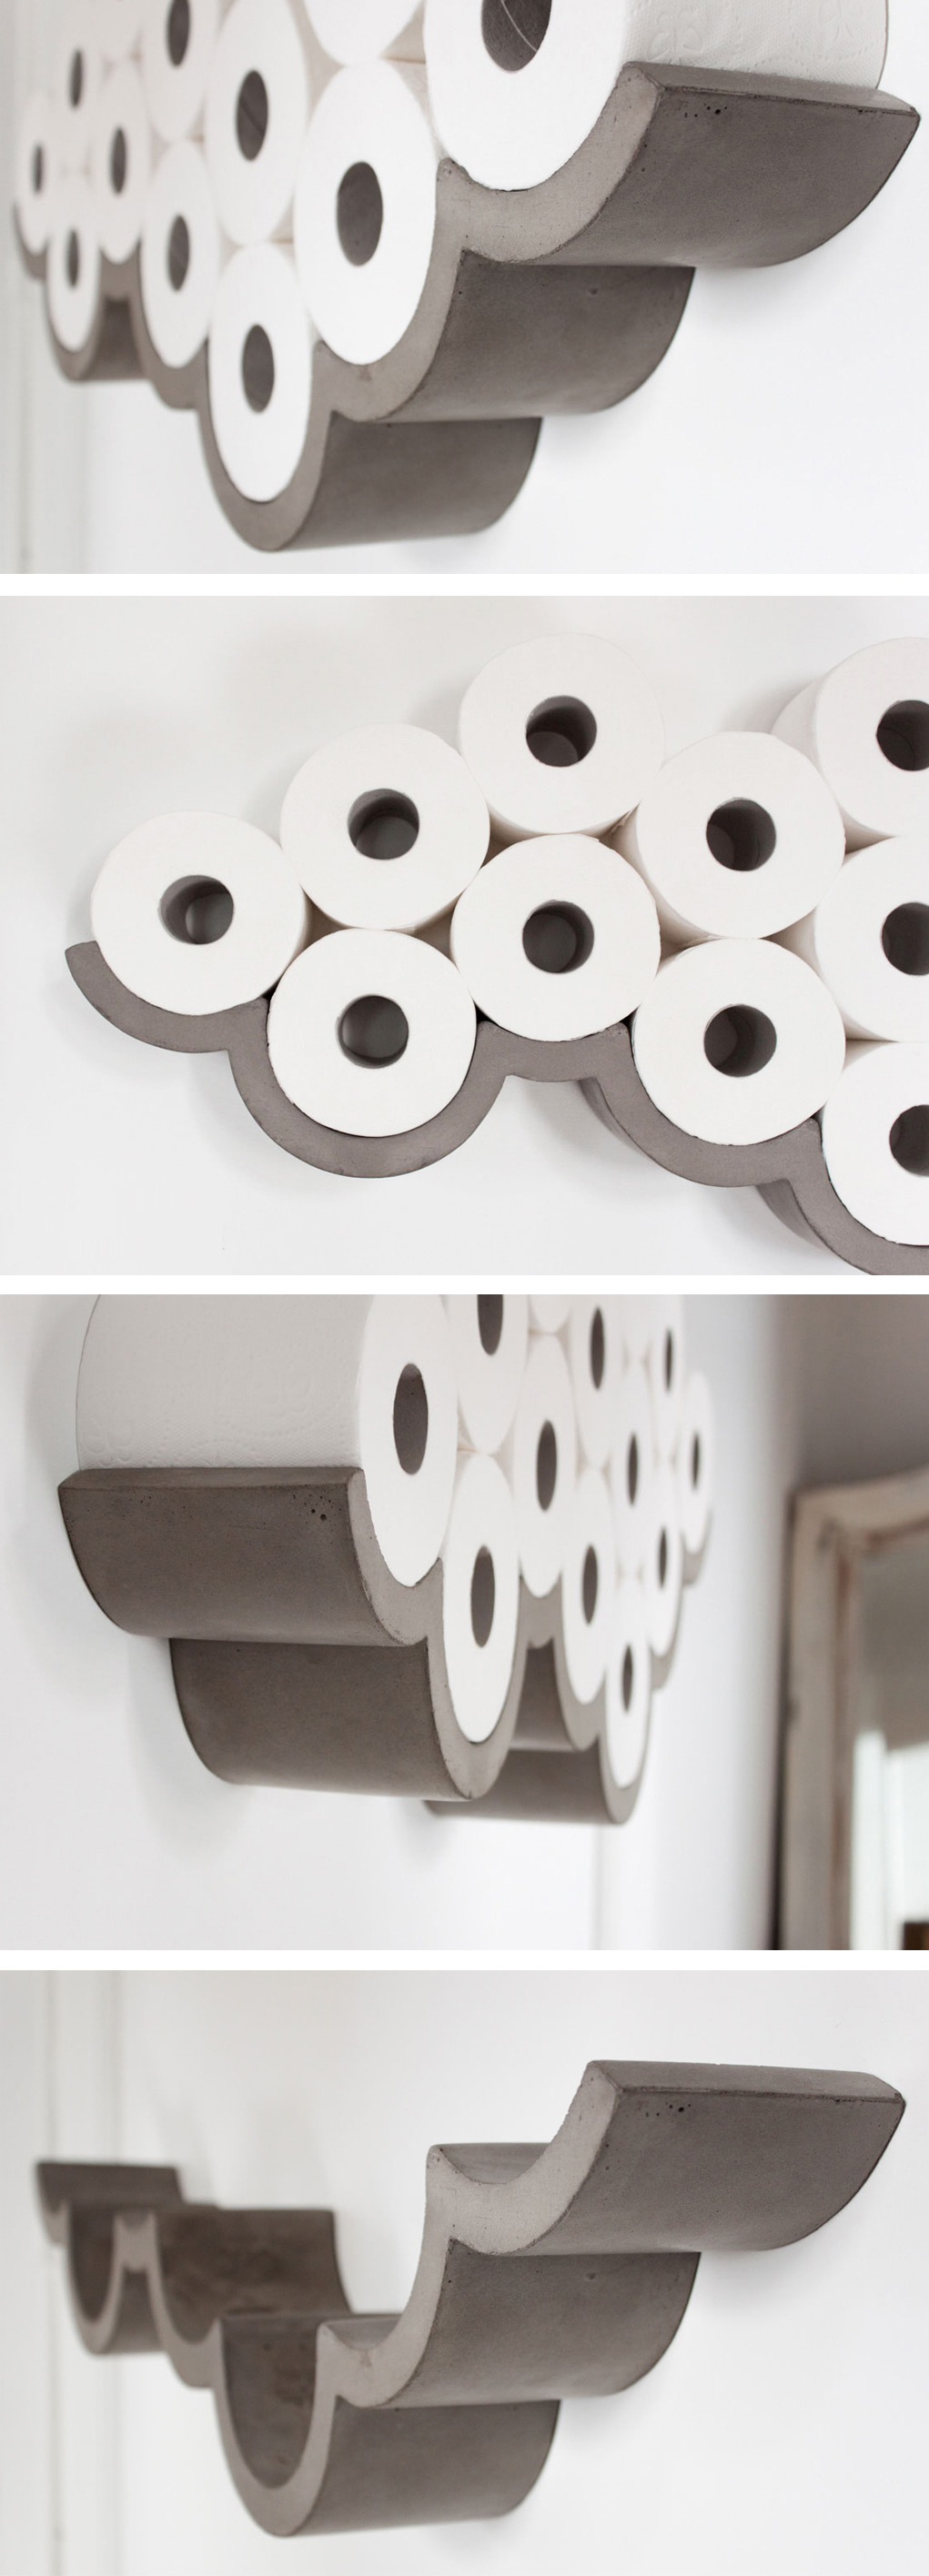 Concrete cloud shaped toilet paper holder! Amazing! #product_design